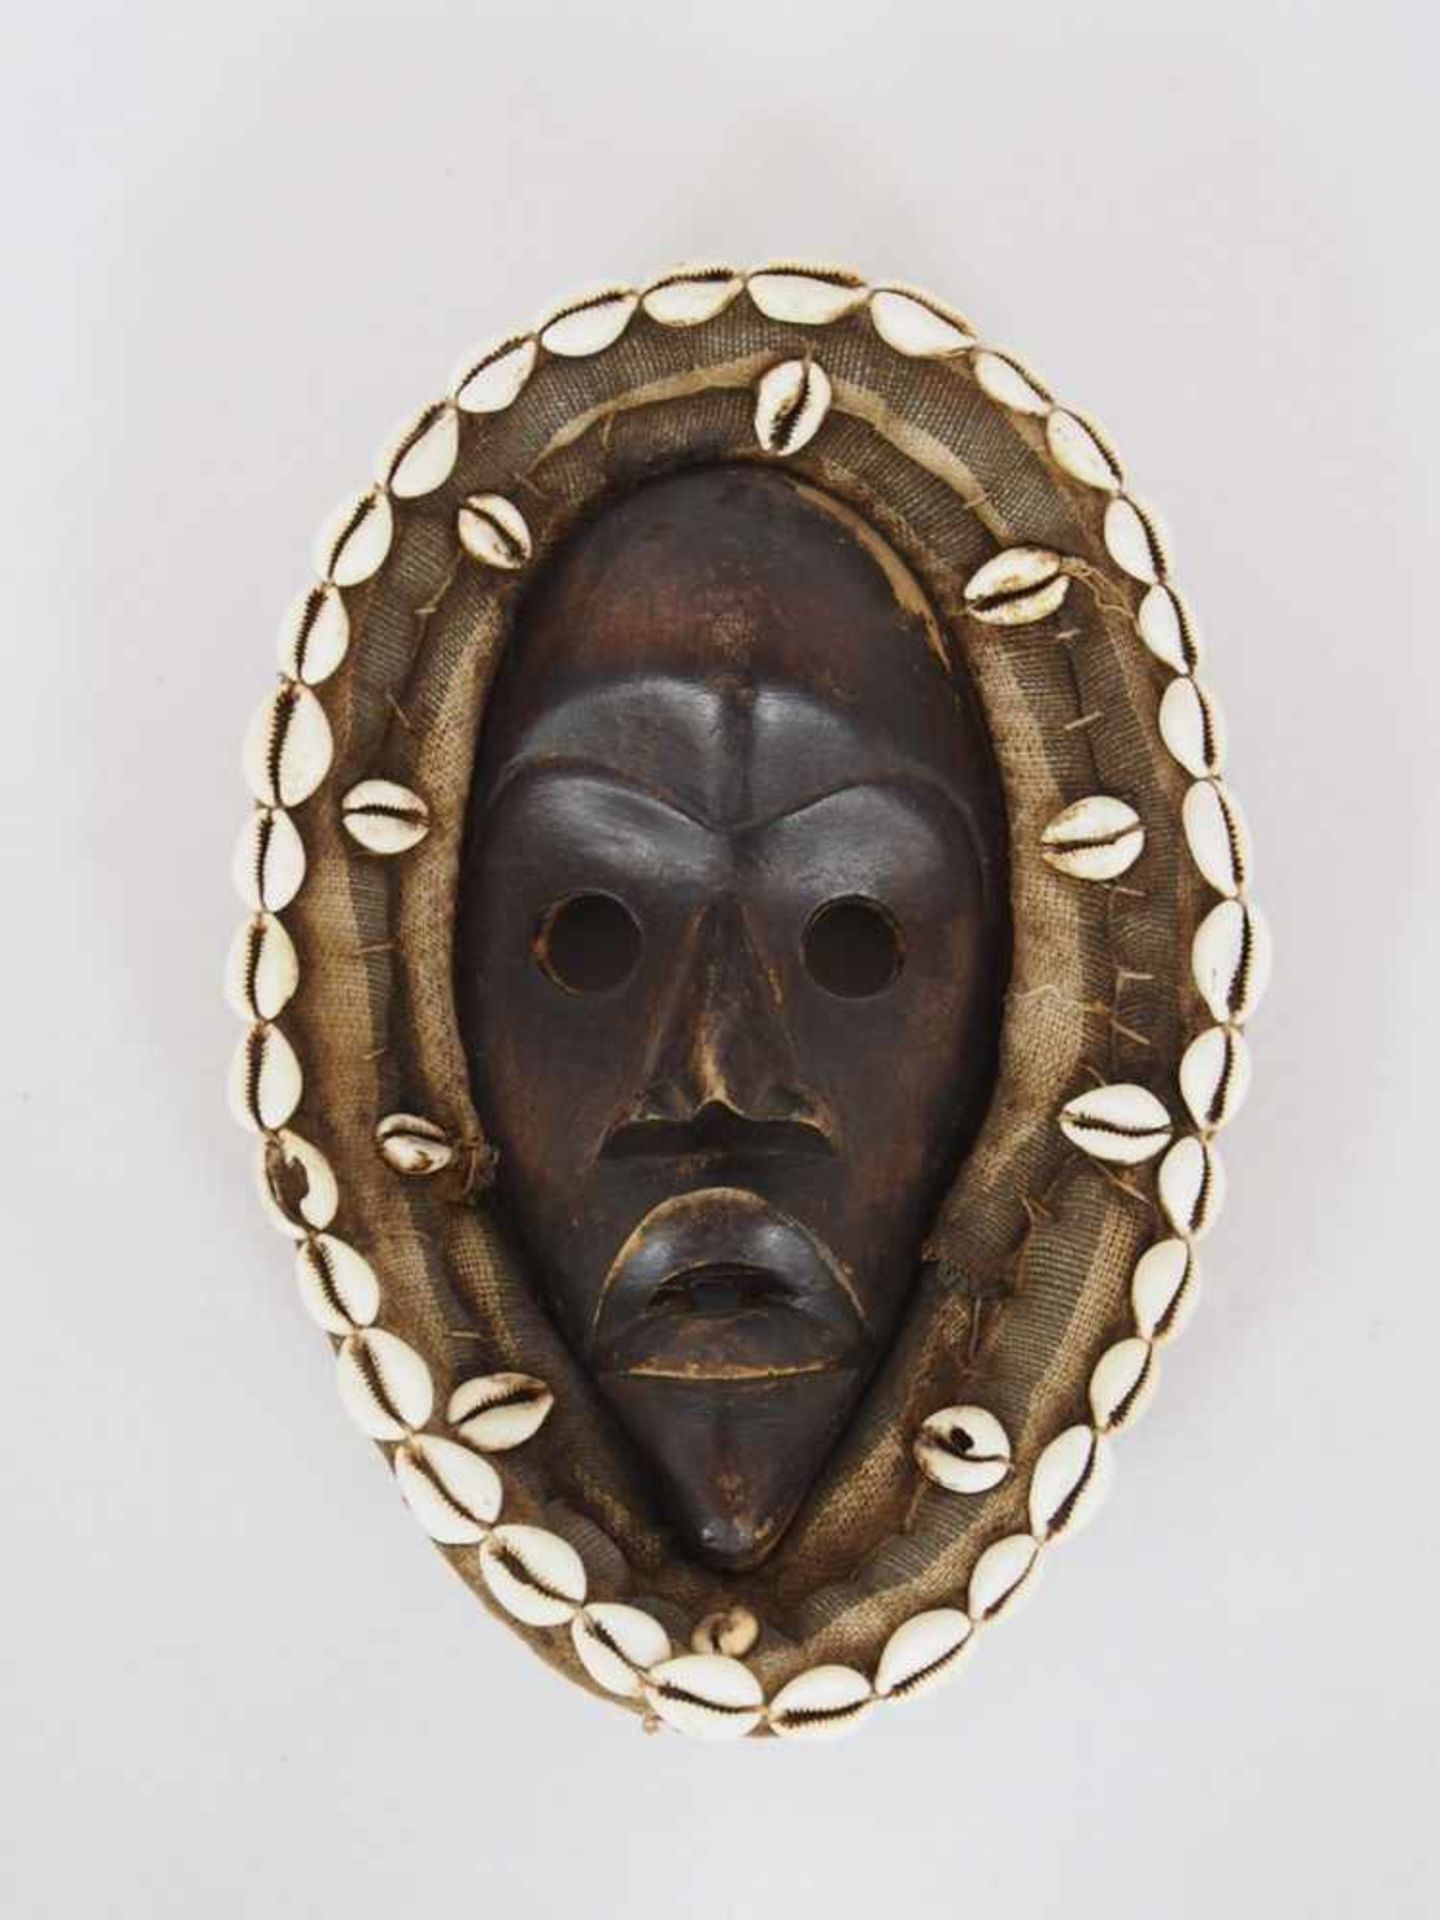 RitualmaskeHolz geschnitzt, Leinen, Kauri-Muscheln, Höhe 31 cm, Benin(?) 1. Hälfte 20. Jahrhundert